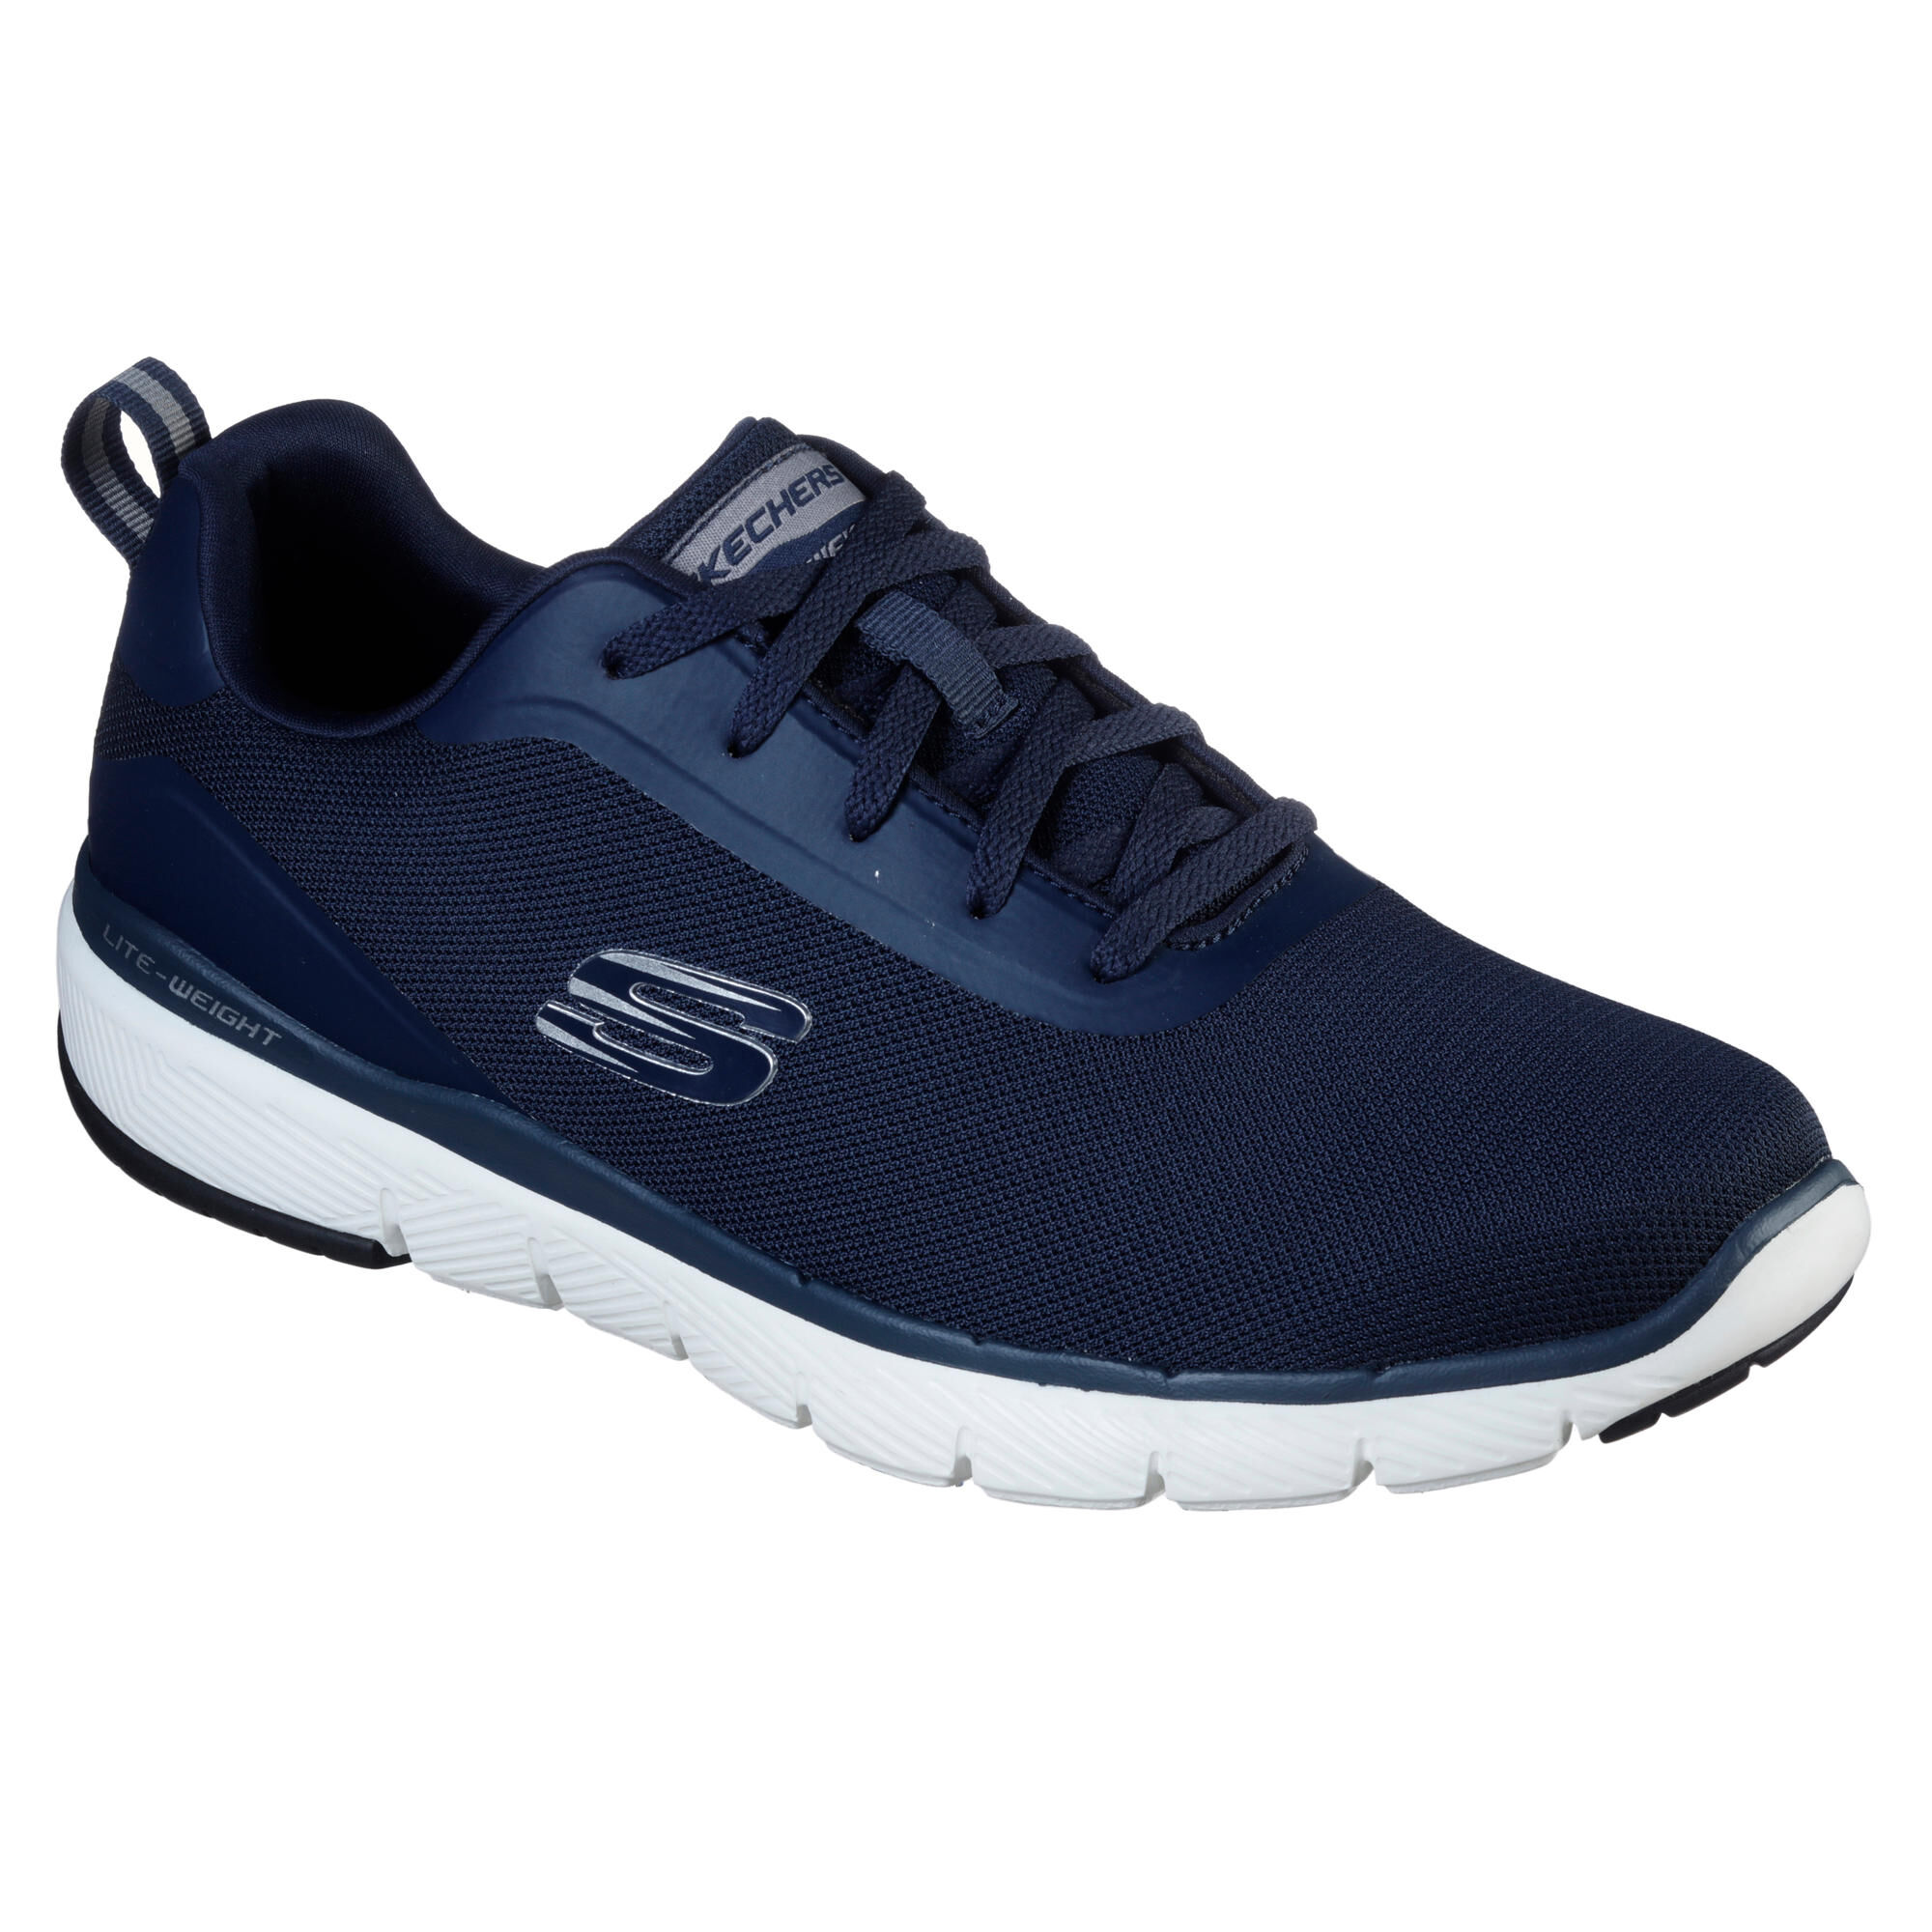 SKECHERS Men's Fitness Walking Shoes Skechers Flex Appeal - blue